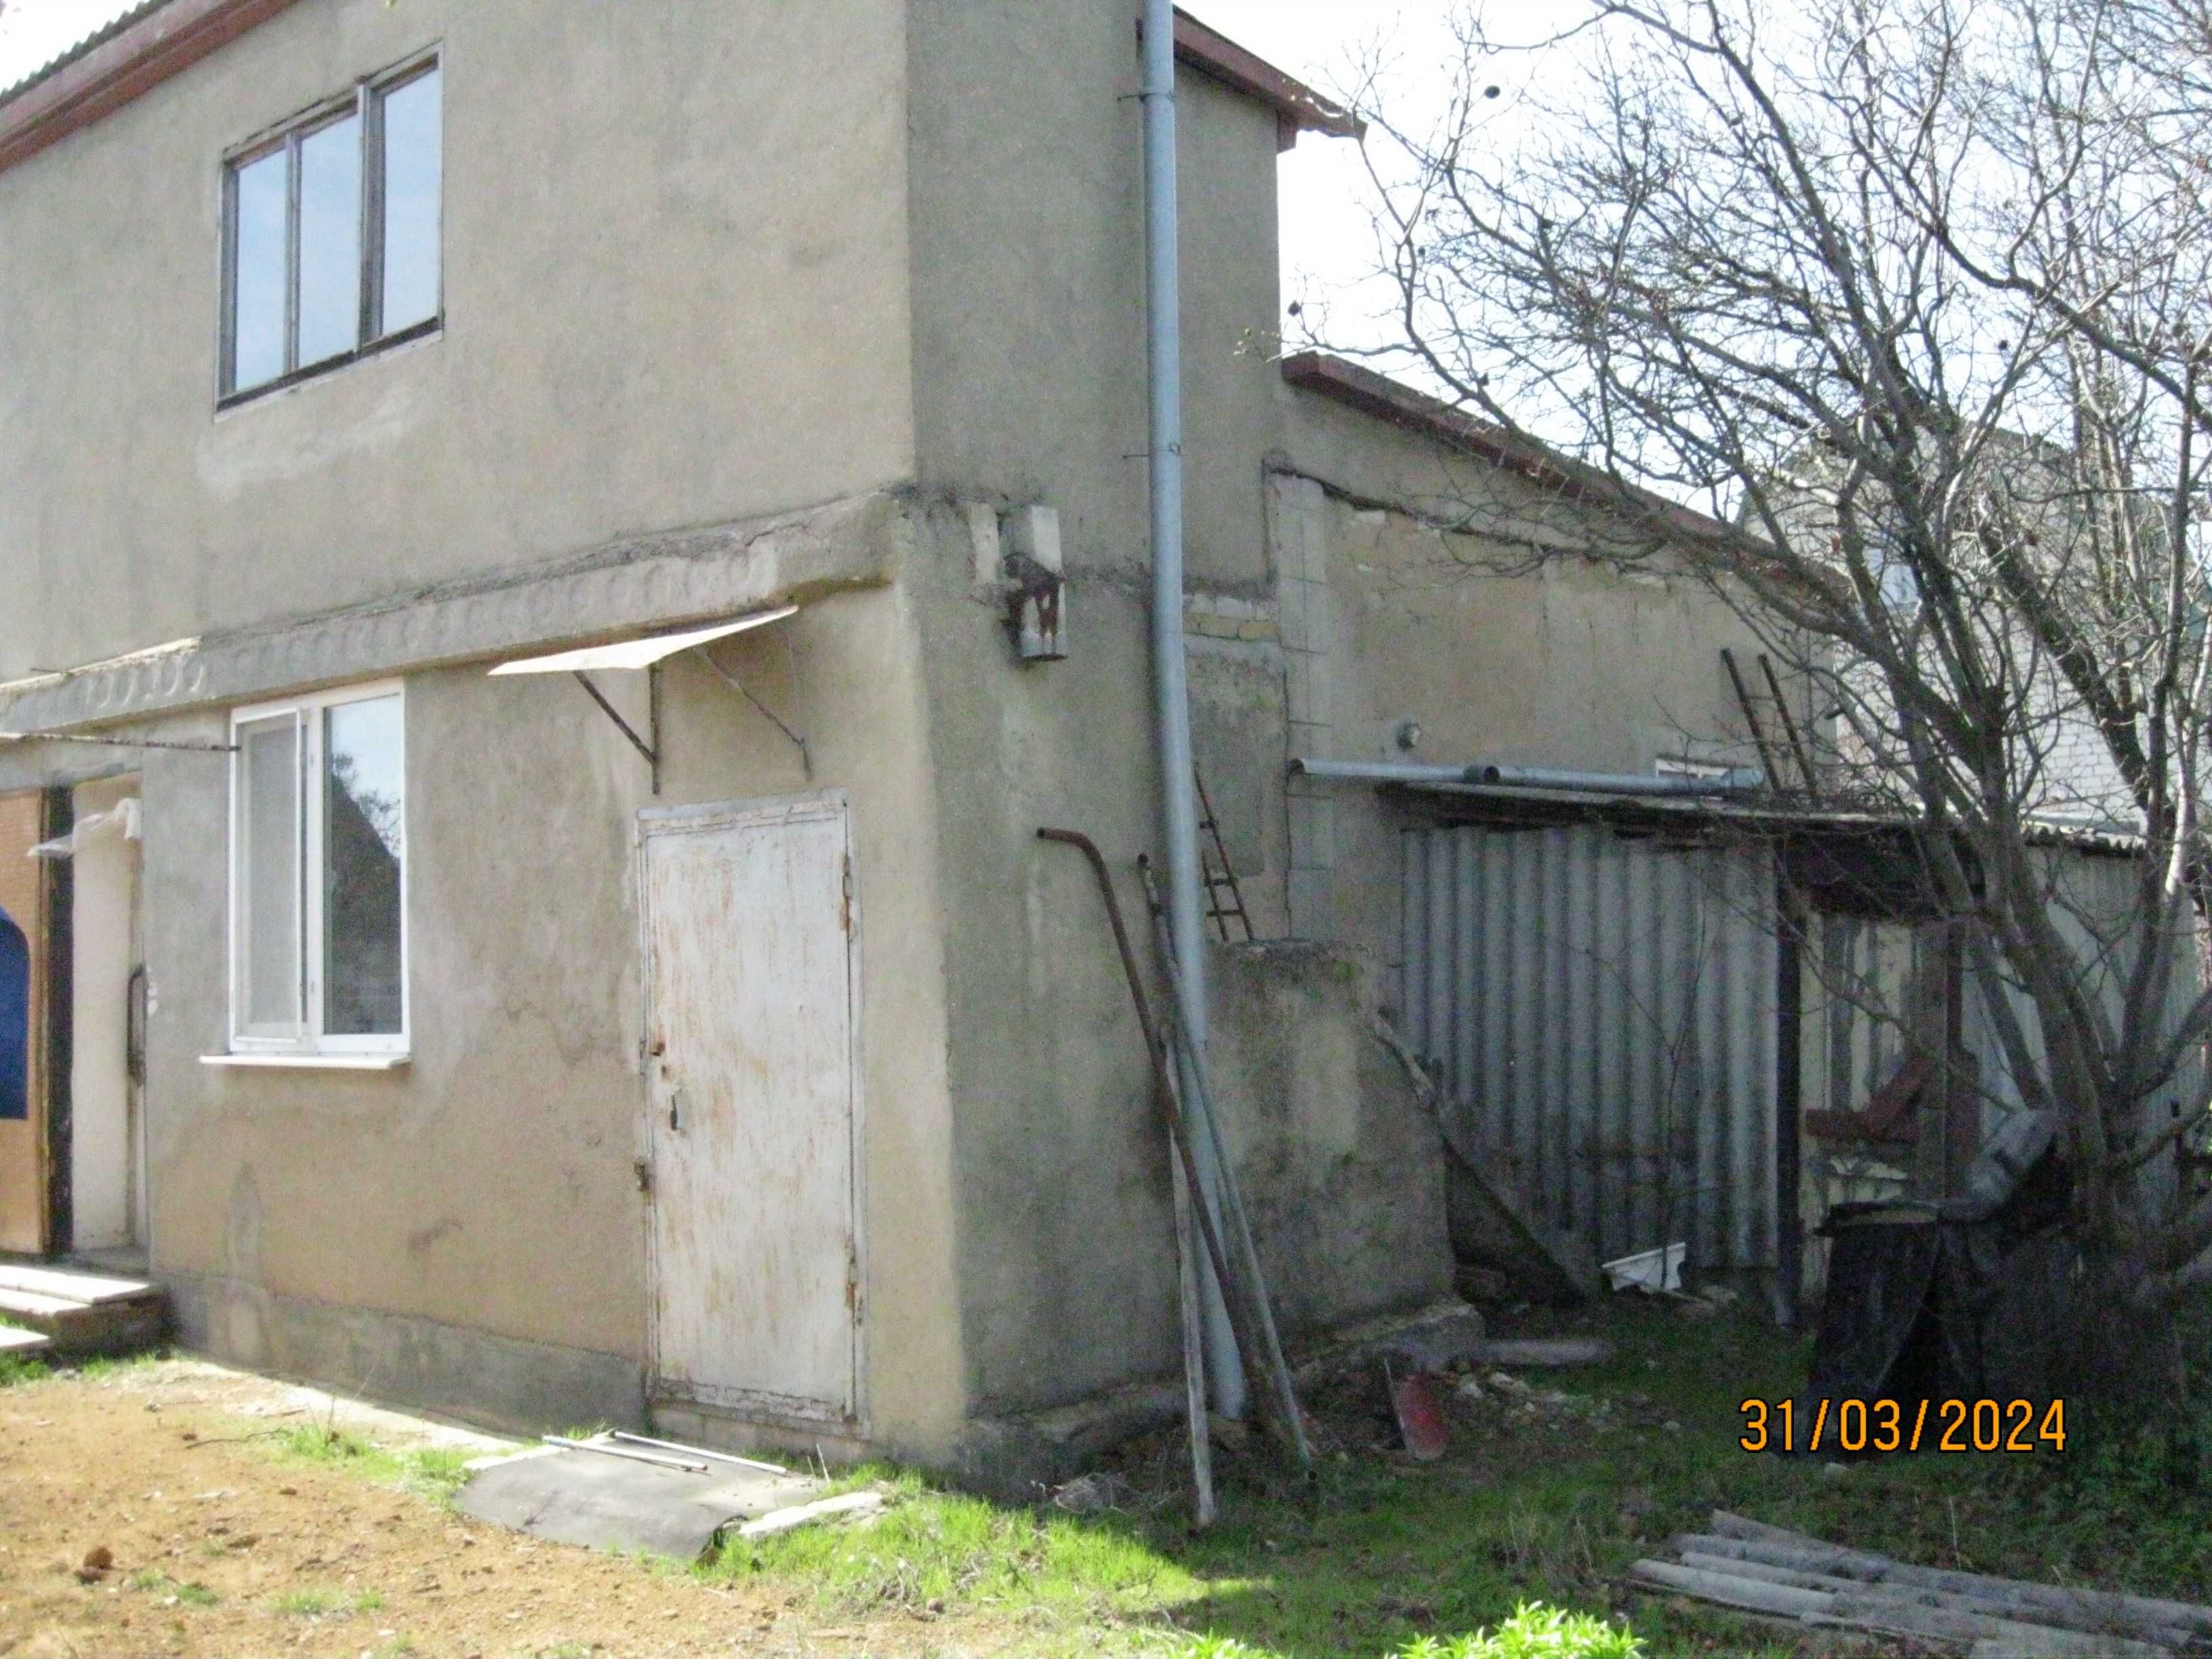 Дом дача со всеми удобствами рядом с городом СОК Надлиманский Палиево